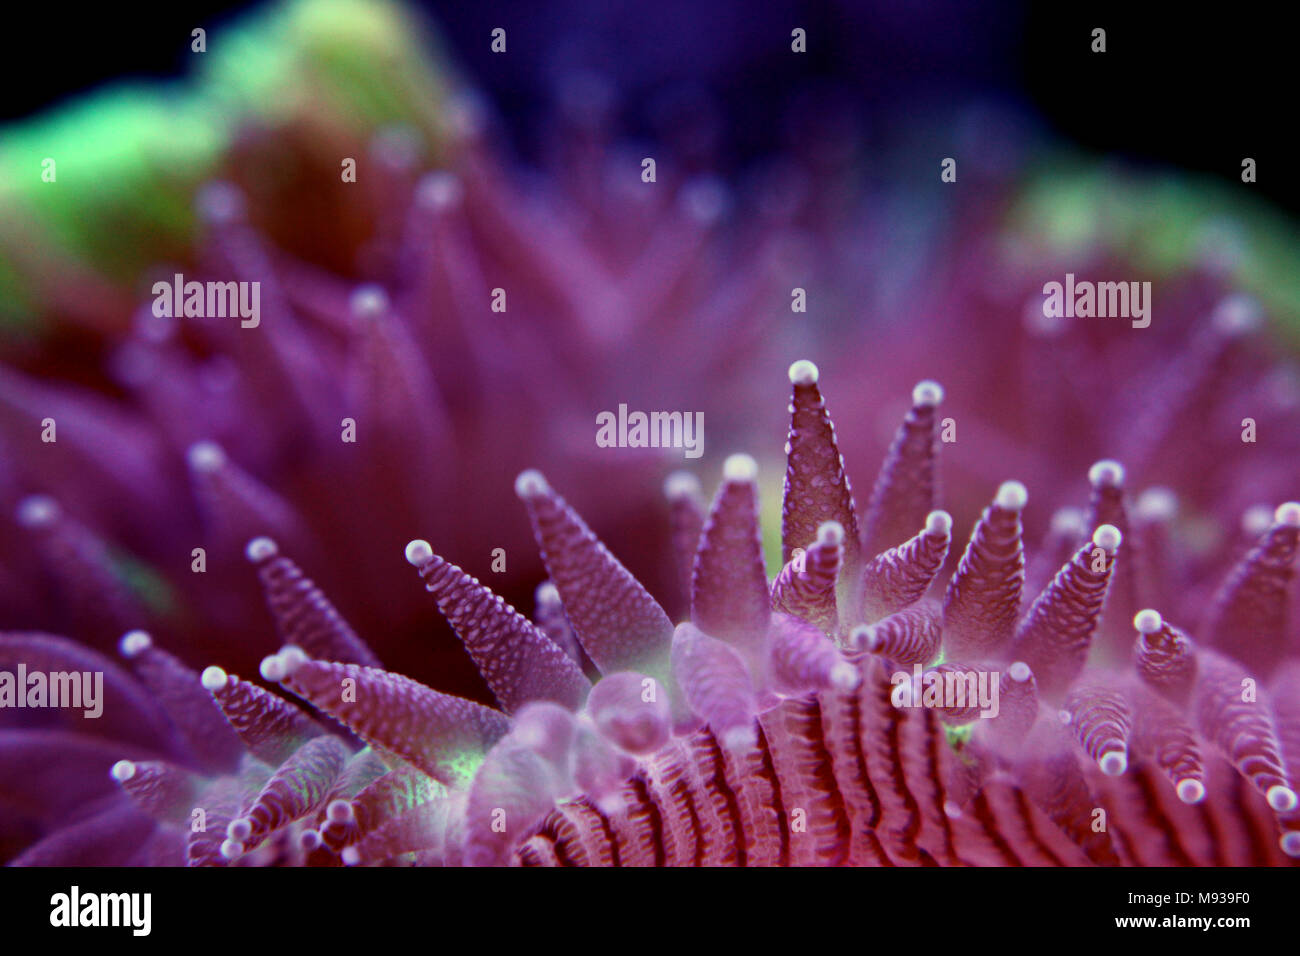 Open brain sp. coral in reef aquarium Stock Photo